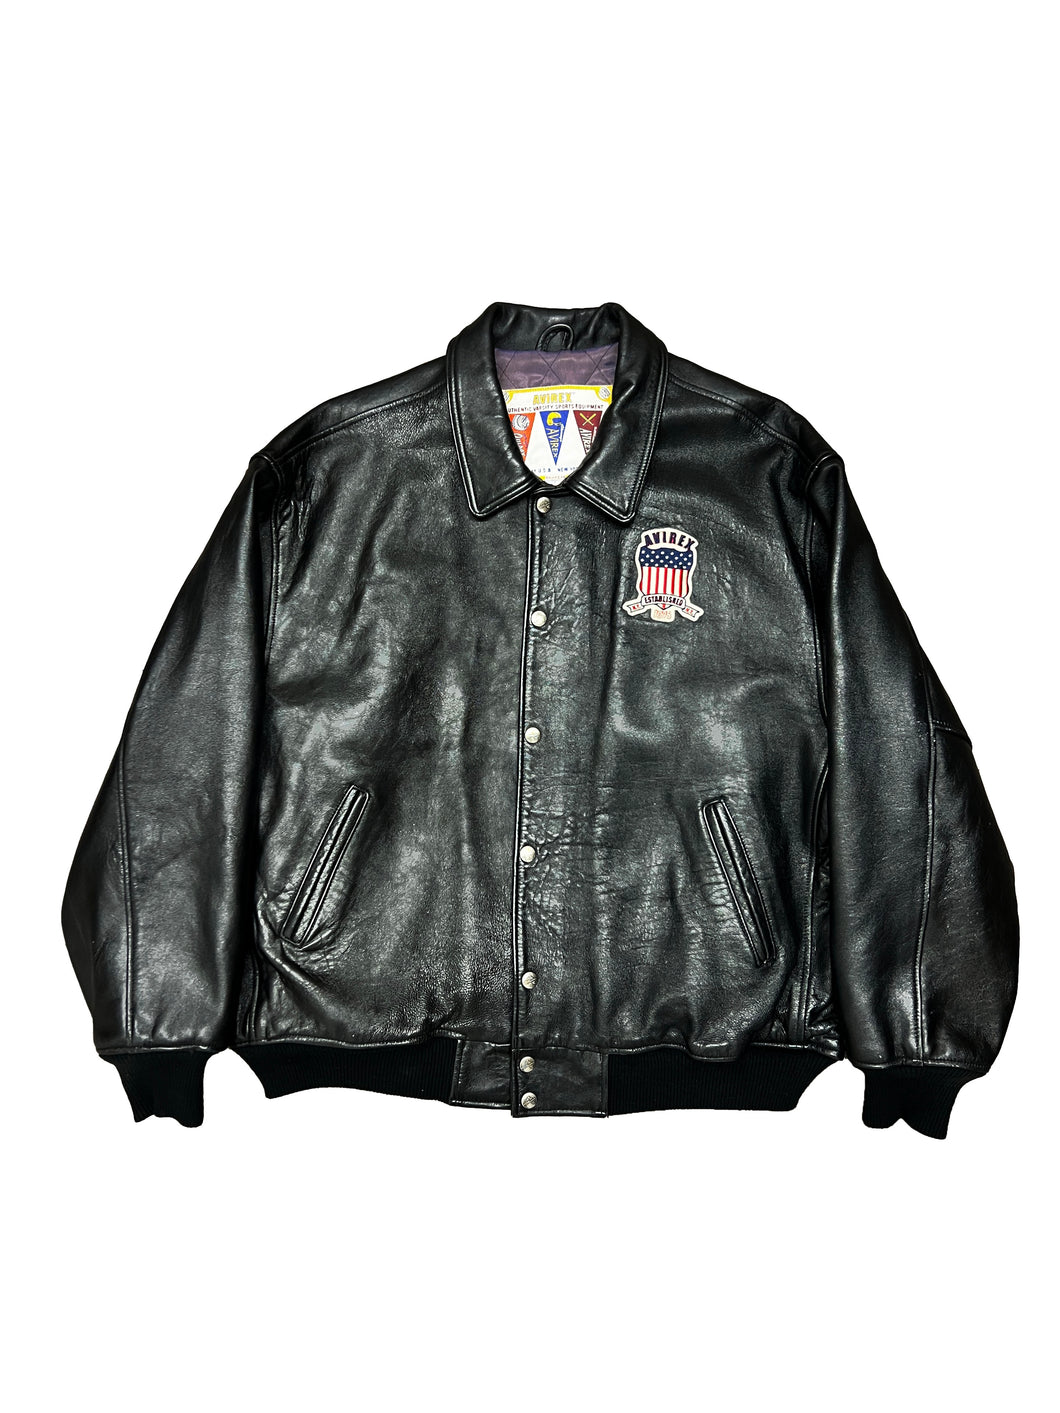 Vintage Avirex Leather Jacket 4X-Large